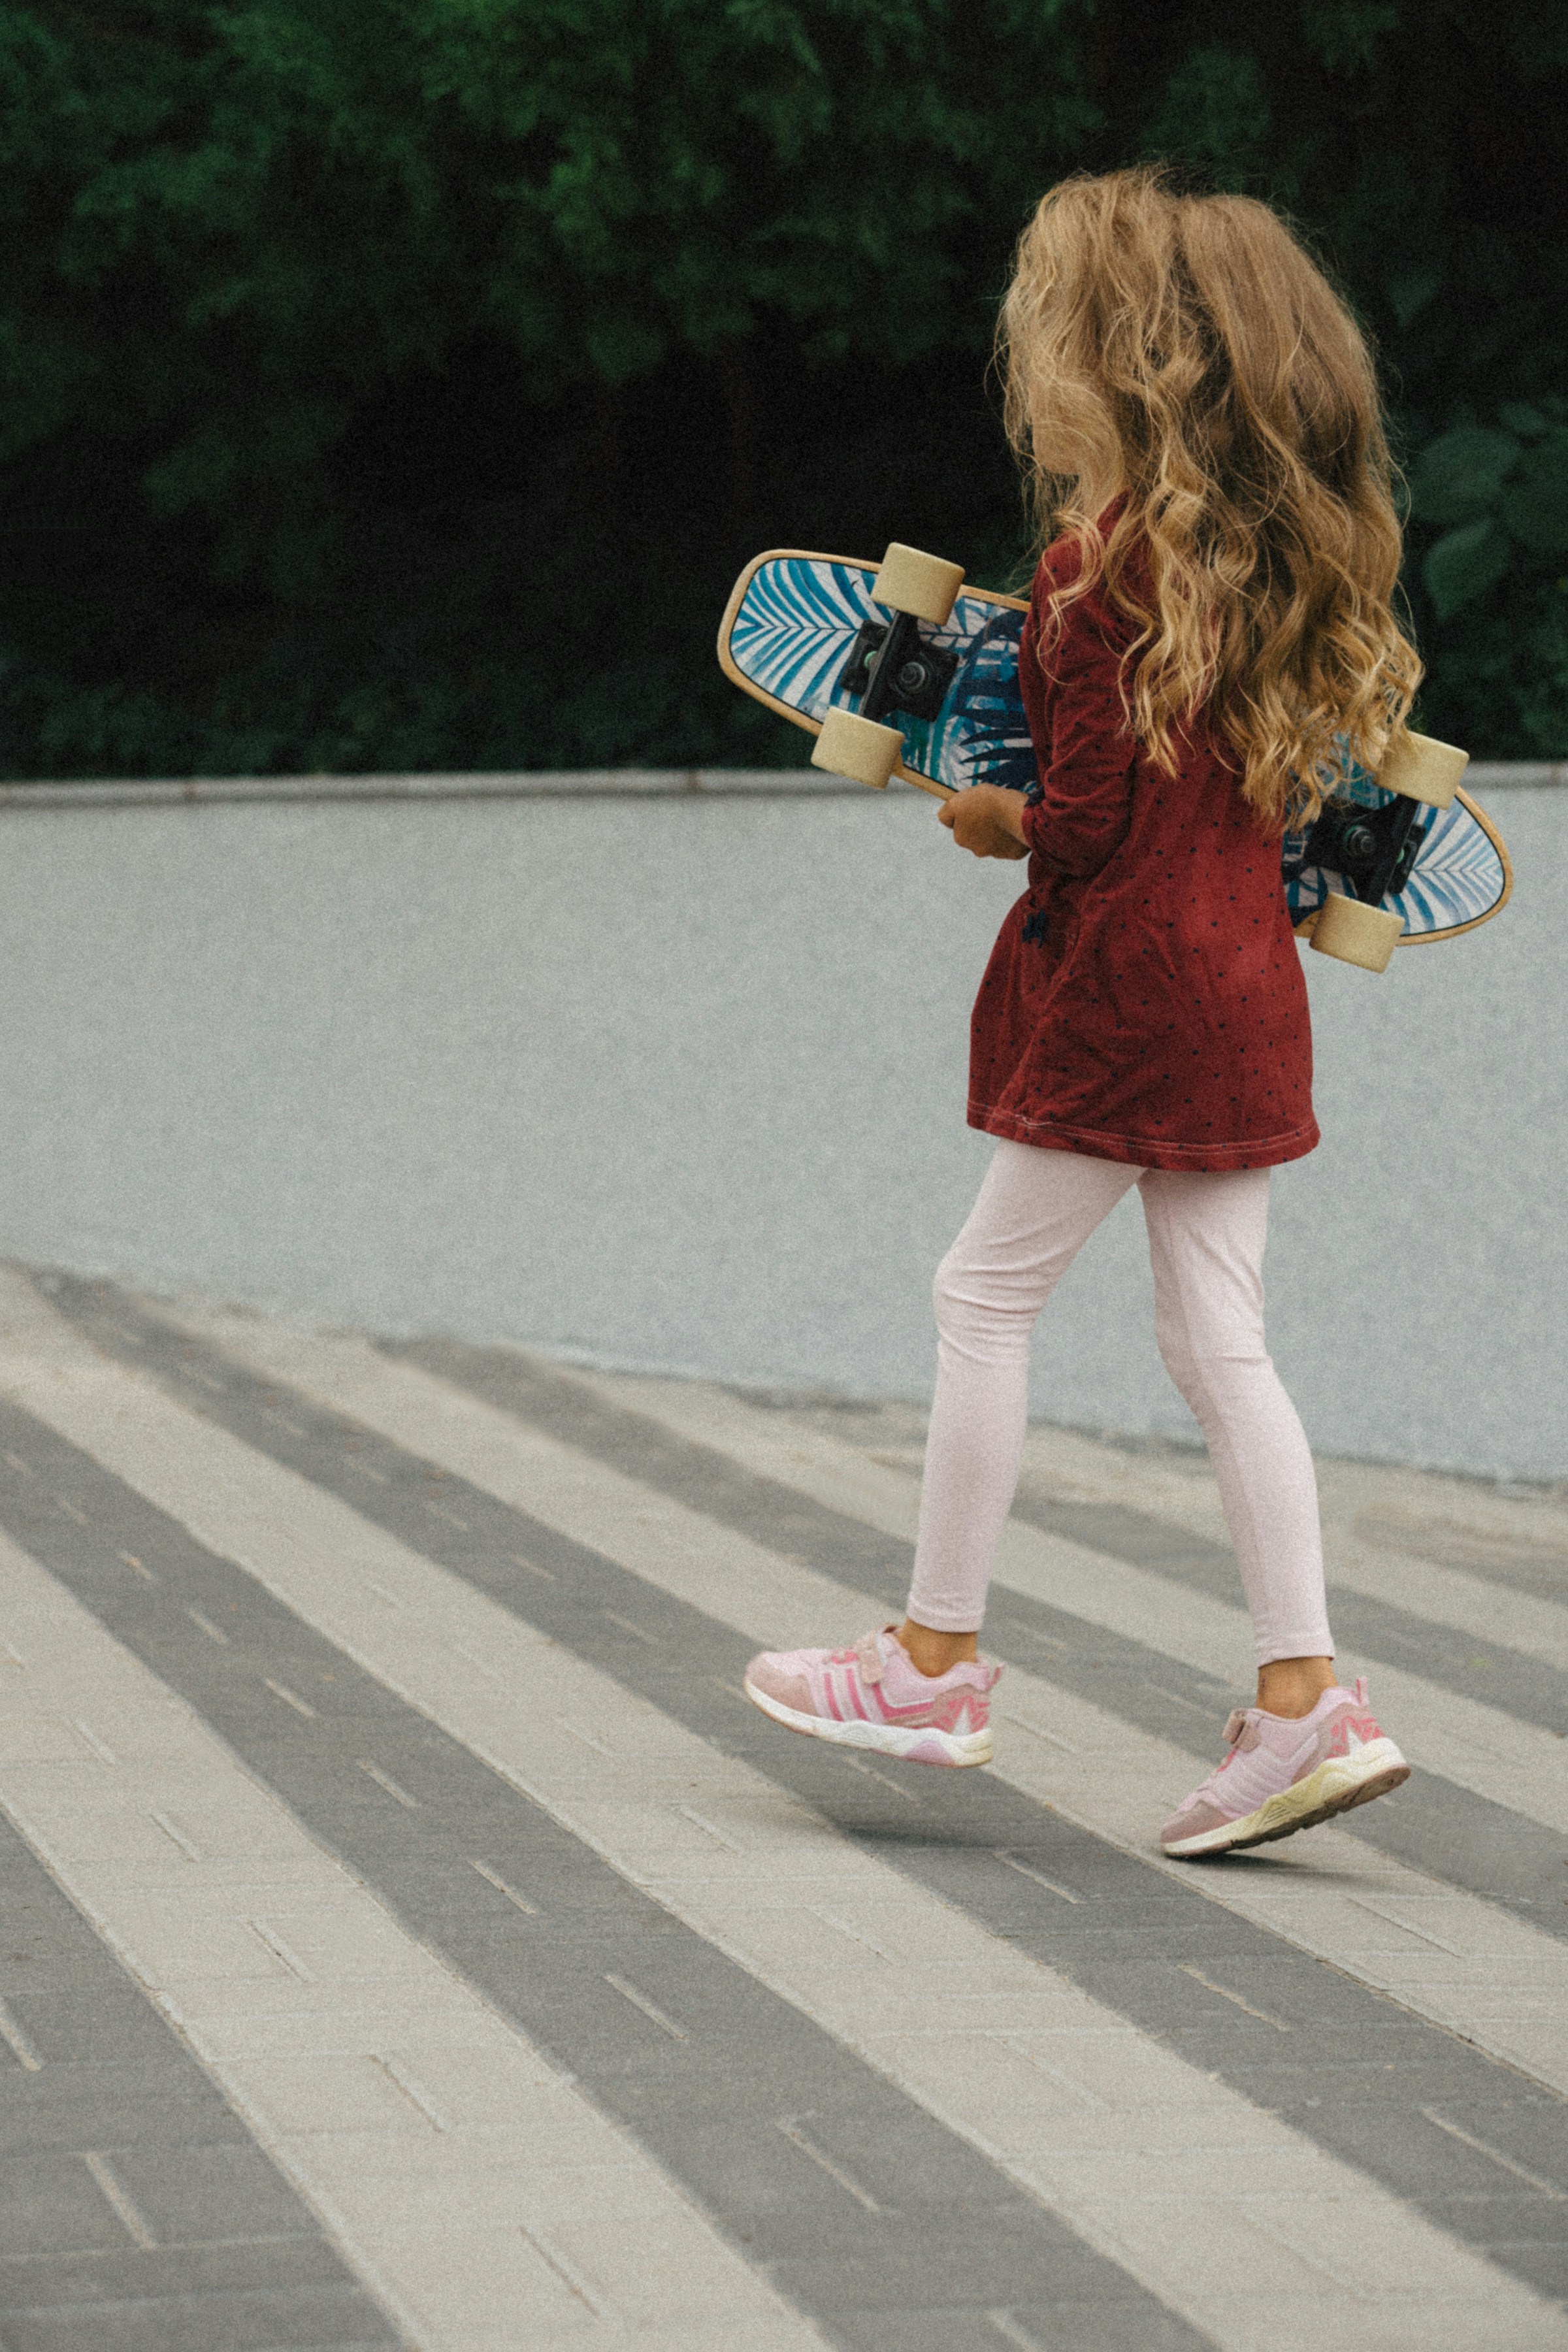 Ein kleines Mädchen hält ein Skateboard | Quelle: Unsplash